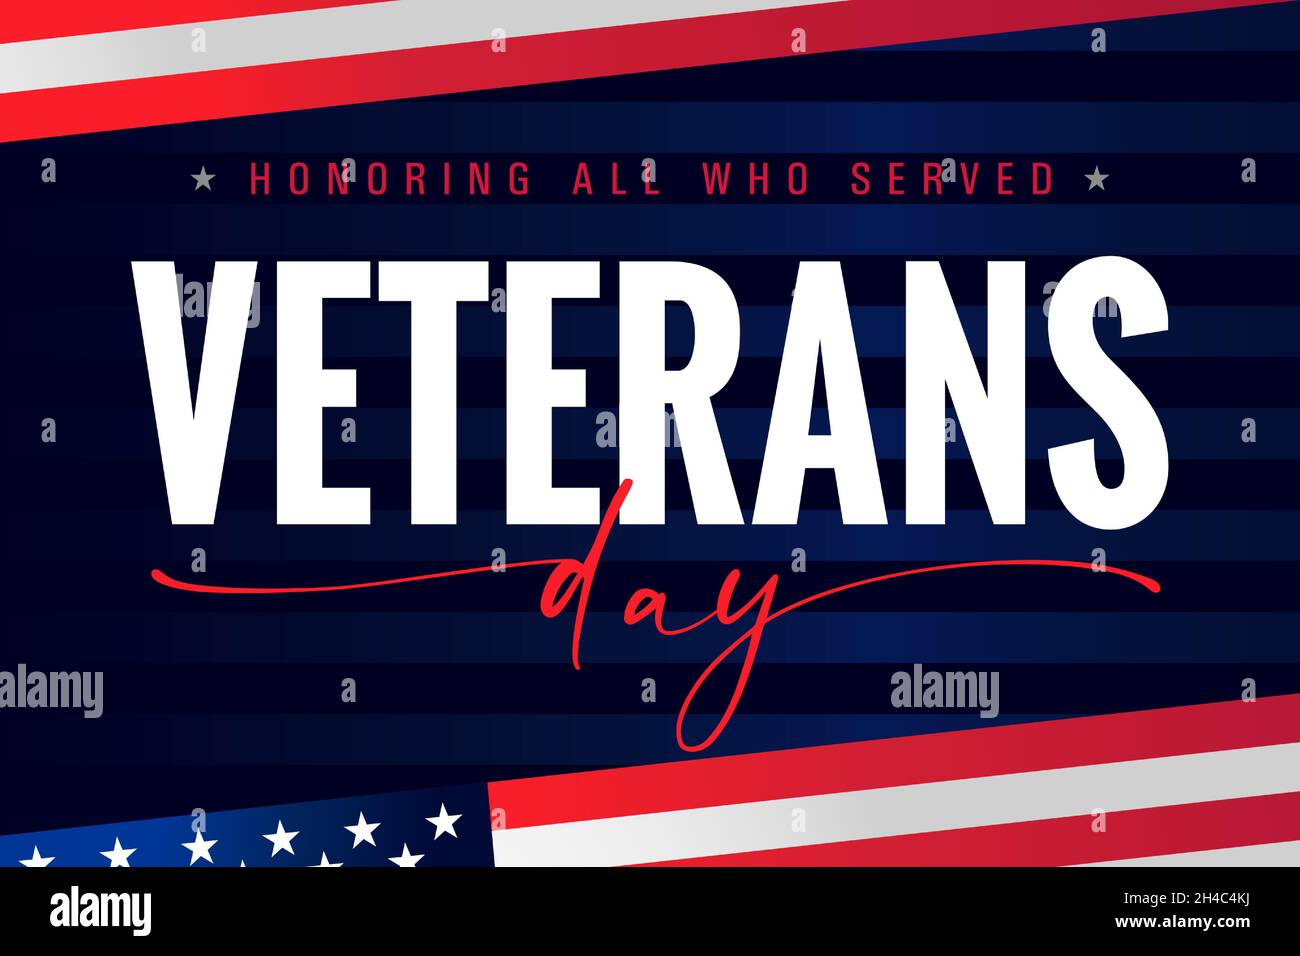 Cartel de letras del Día de los Veteranos de los Estados Unidos, en honor a todos los que sirvieron. Gracias Bandera de veteranos con fondo de bandera estadounidense. Ilustración vectorial Ilustración del Vector